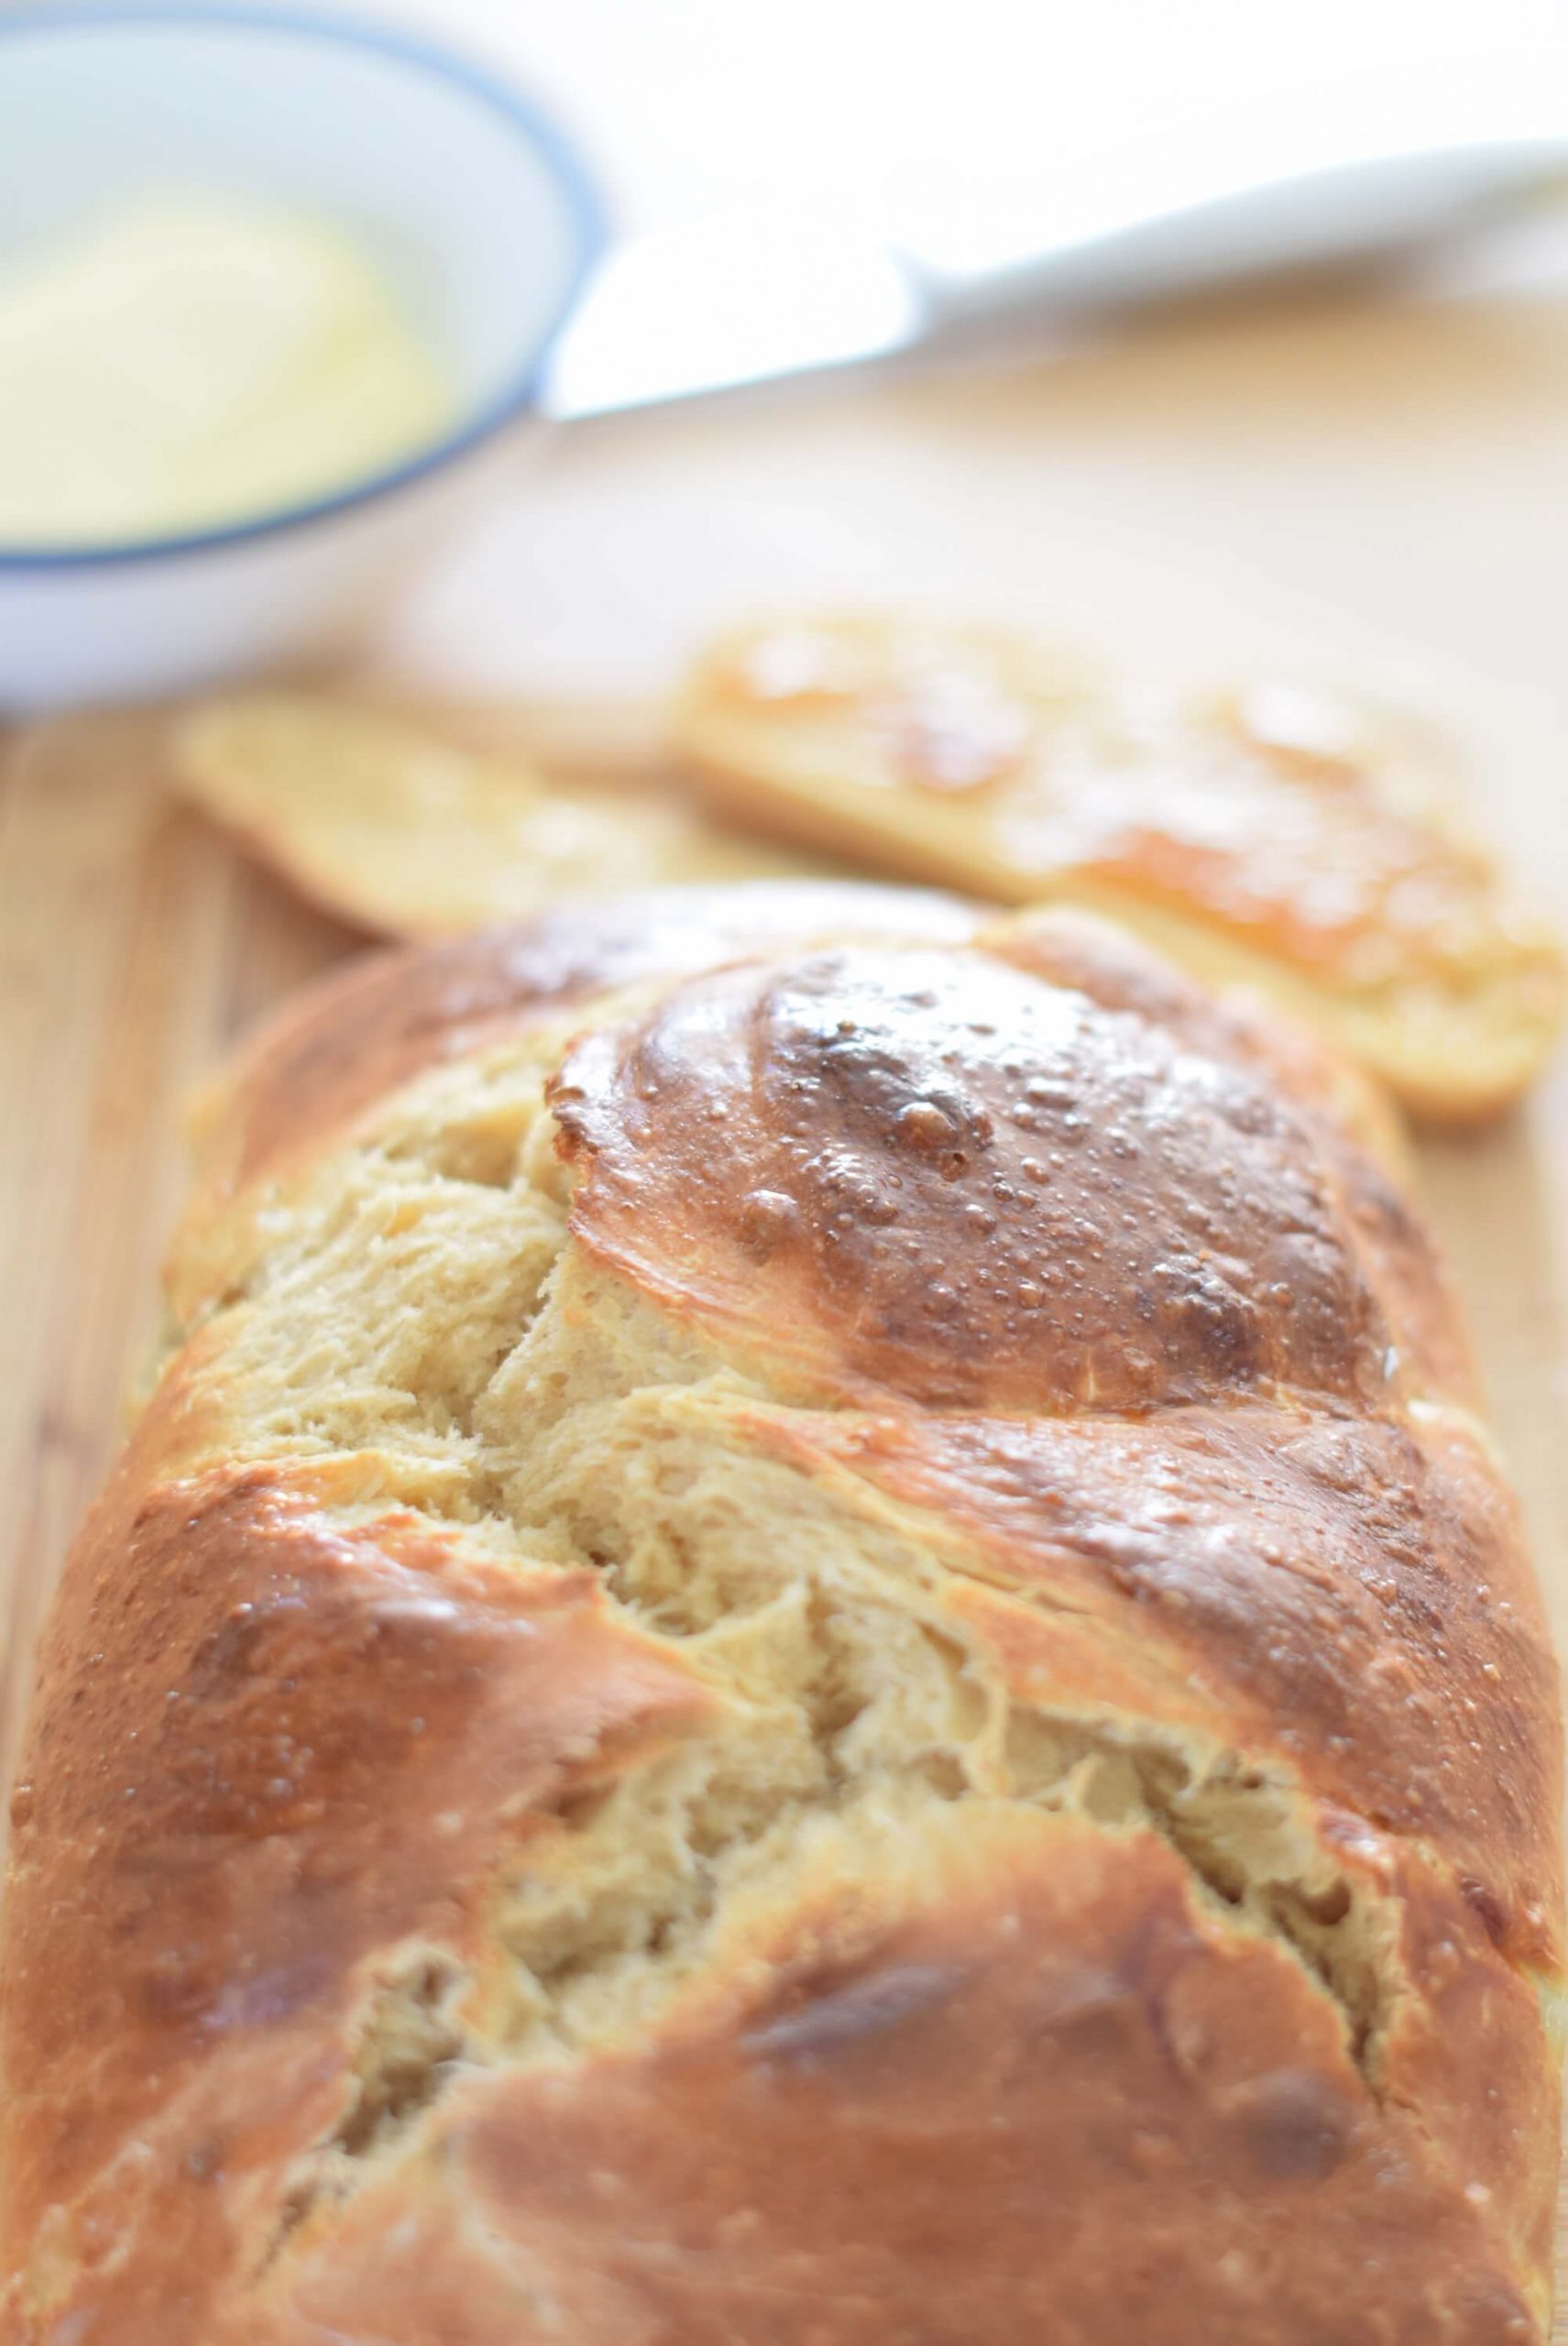 A freshly baked sourdough braided brioche bread